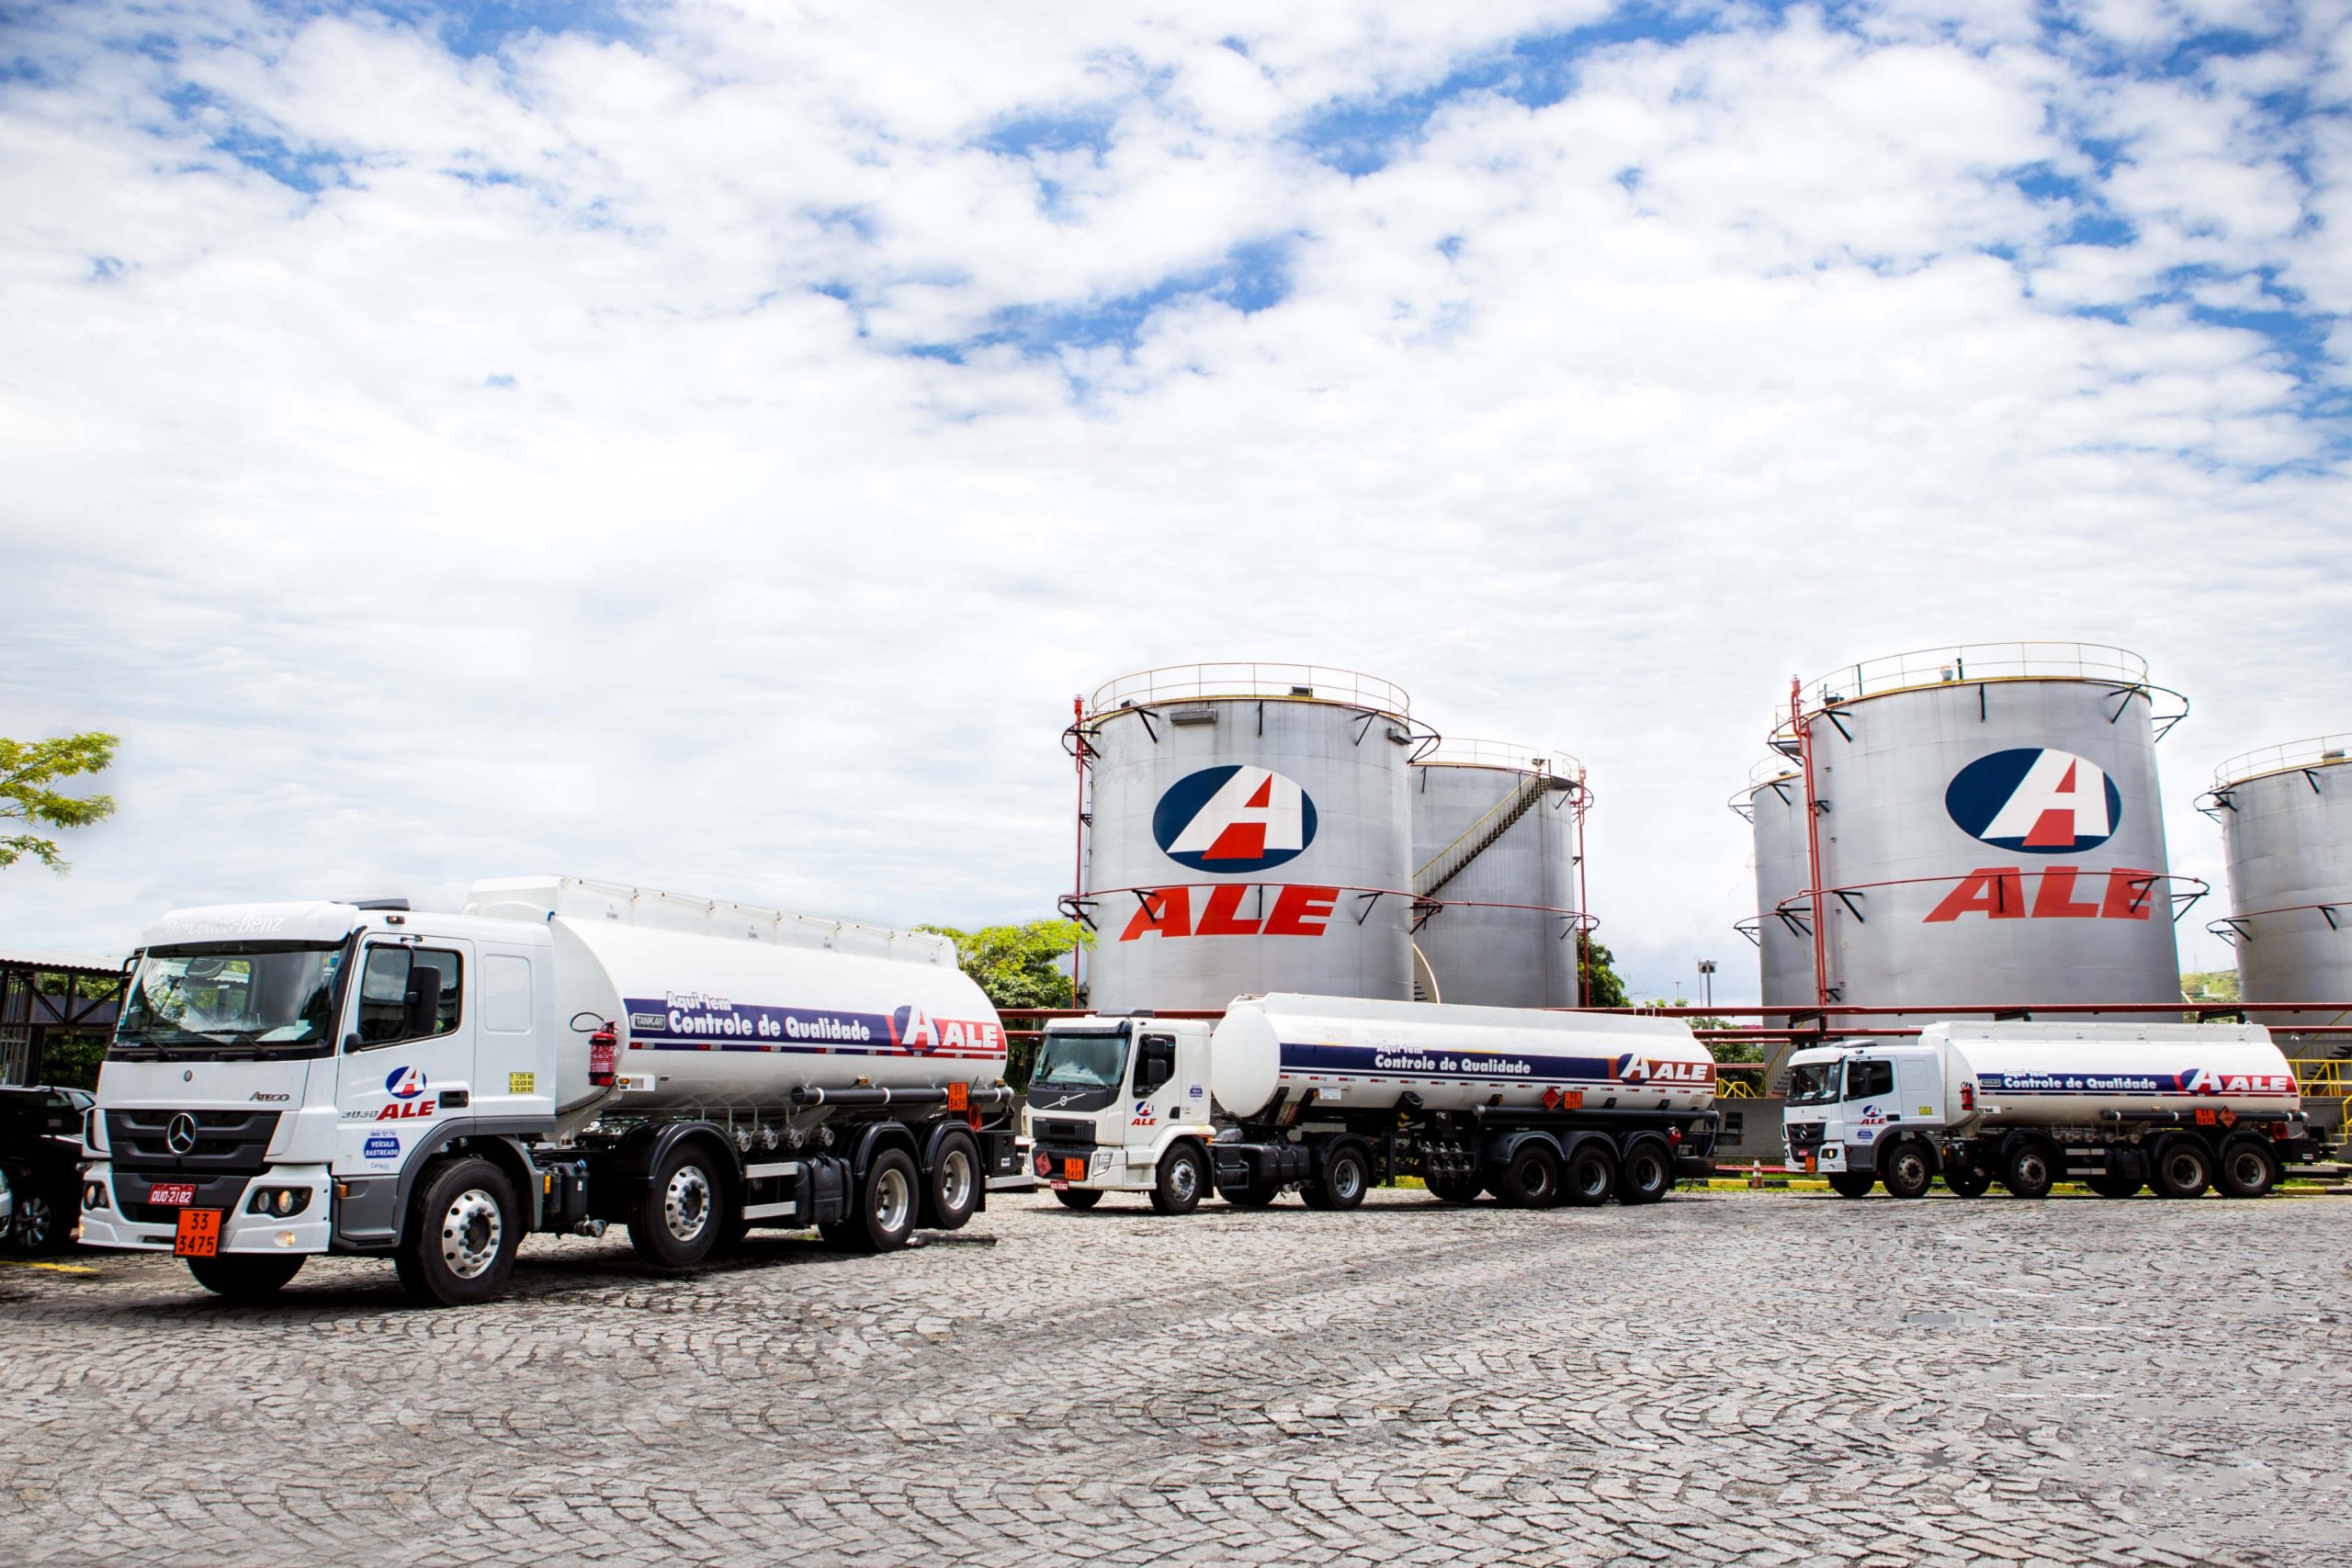 Caminhões na base de distribuição da Ale - Foto: divulgação